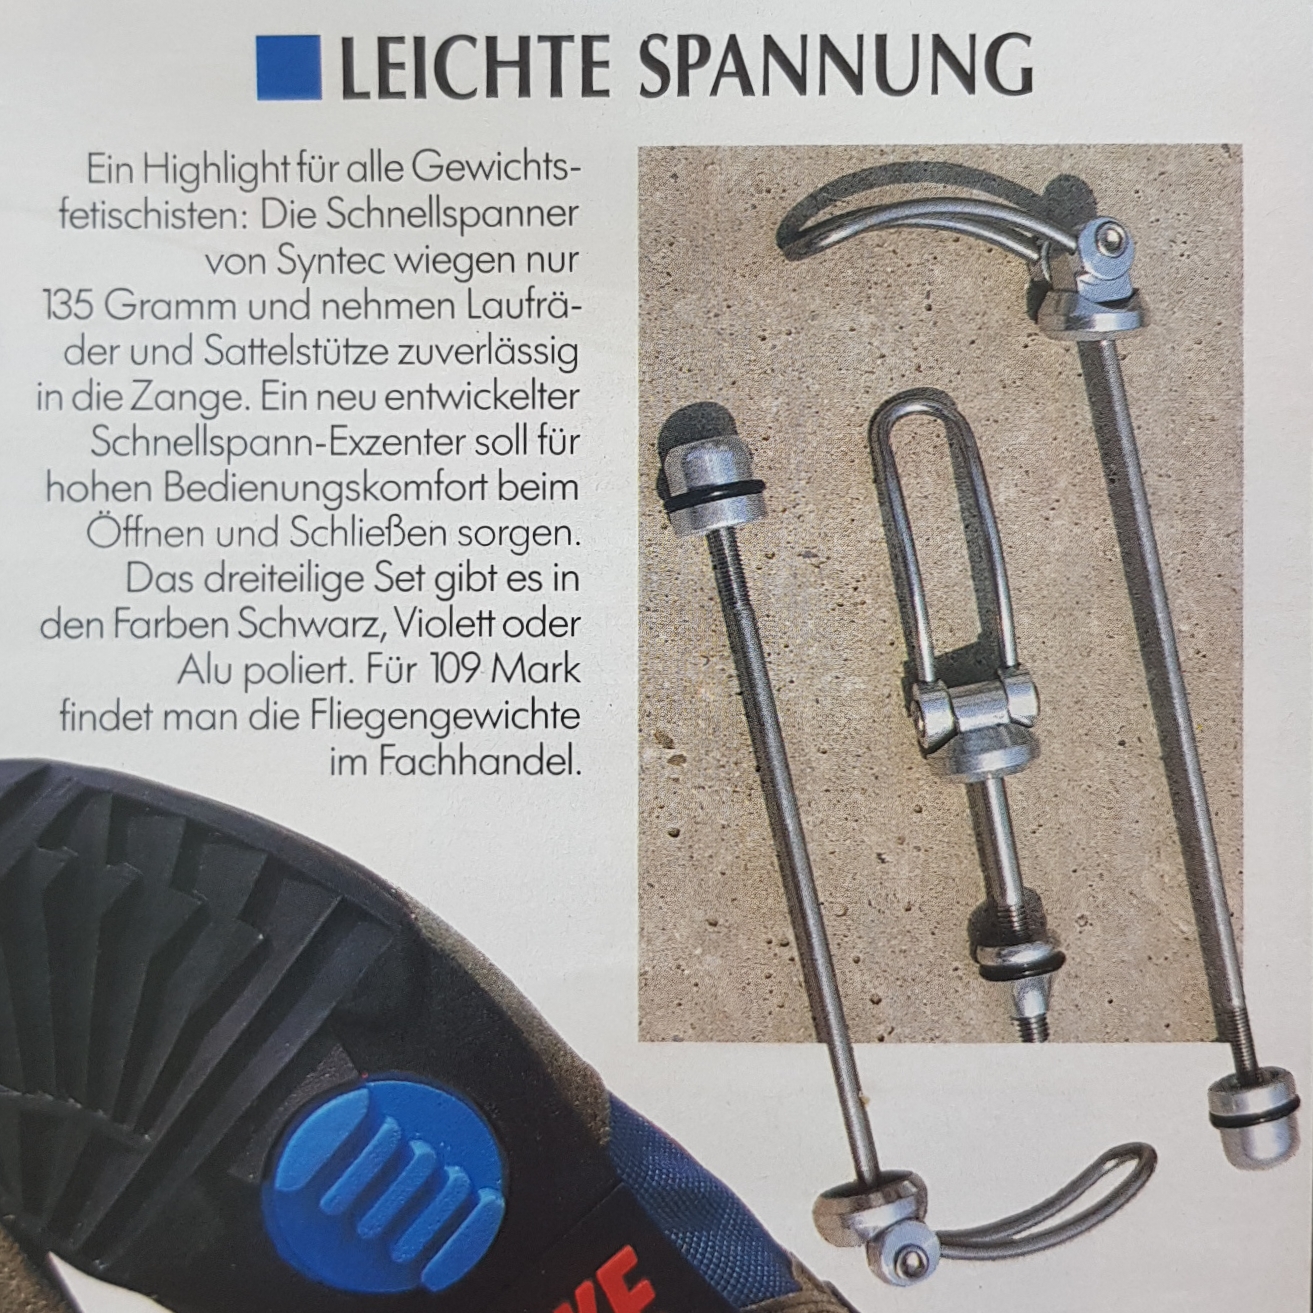 Syntec Schellspanner wie Sachs Hügi Acor Vorstellung aus Bike 8 1992.jpg